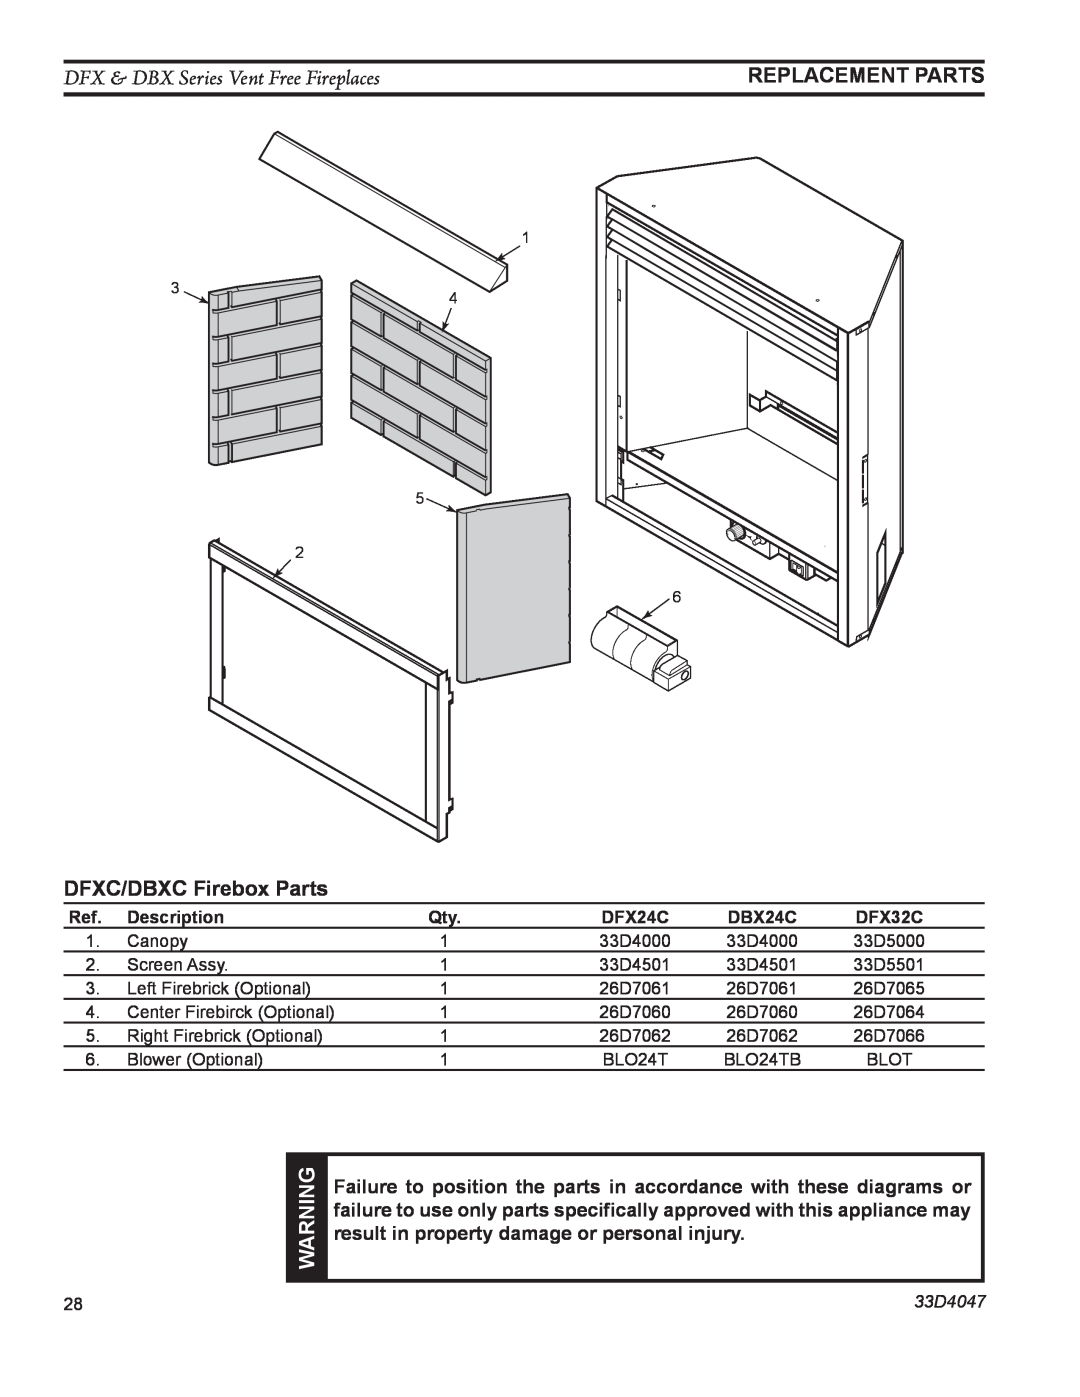 Monessen Hearth DFX24C DFX & DBX Series Vent Free Fireplaces, DFXC/DBXC Firebox Parts, Replacement Parts, 33D4047 